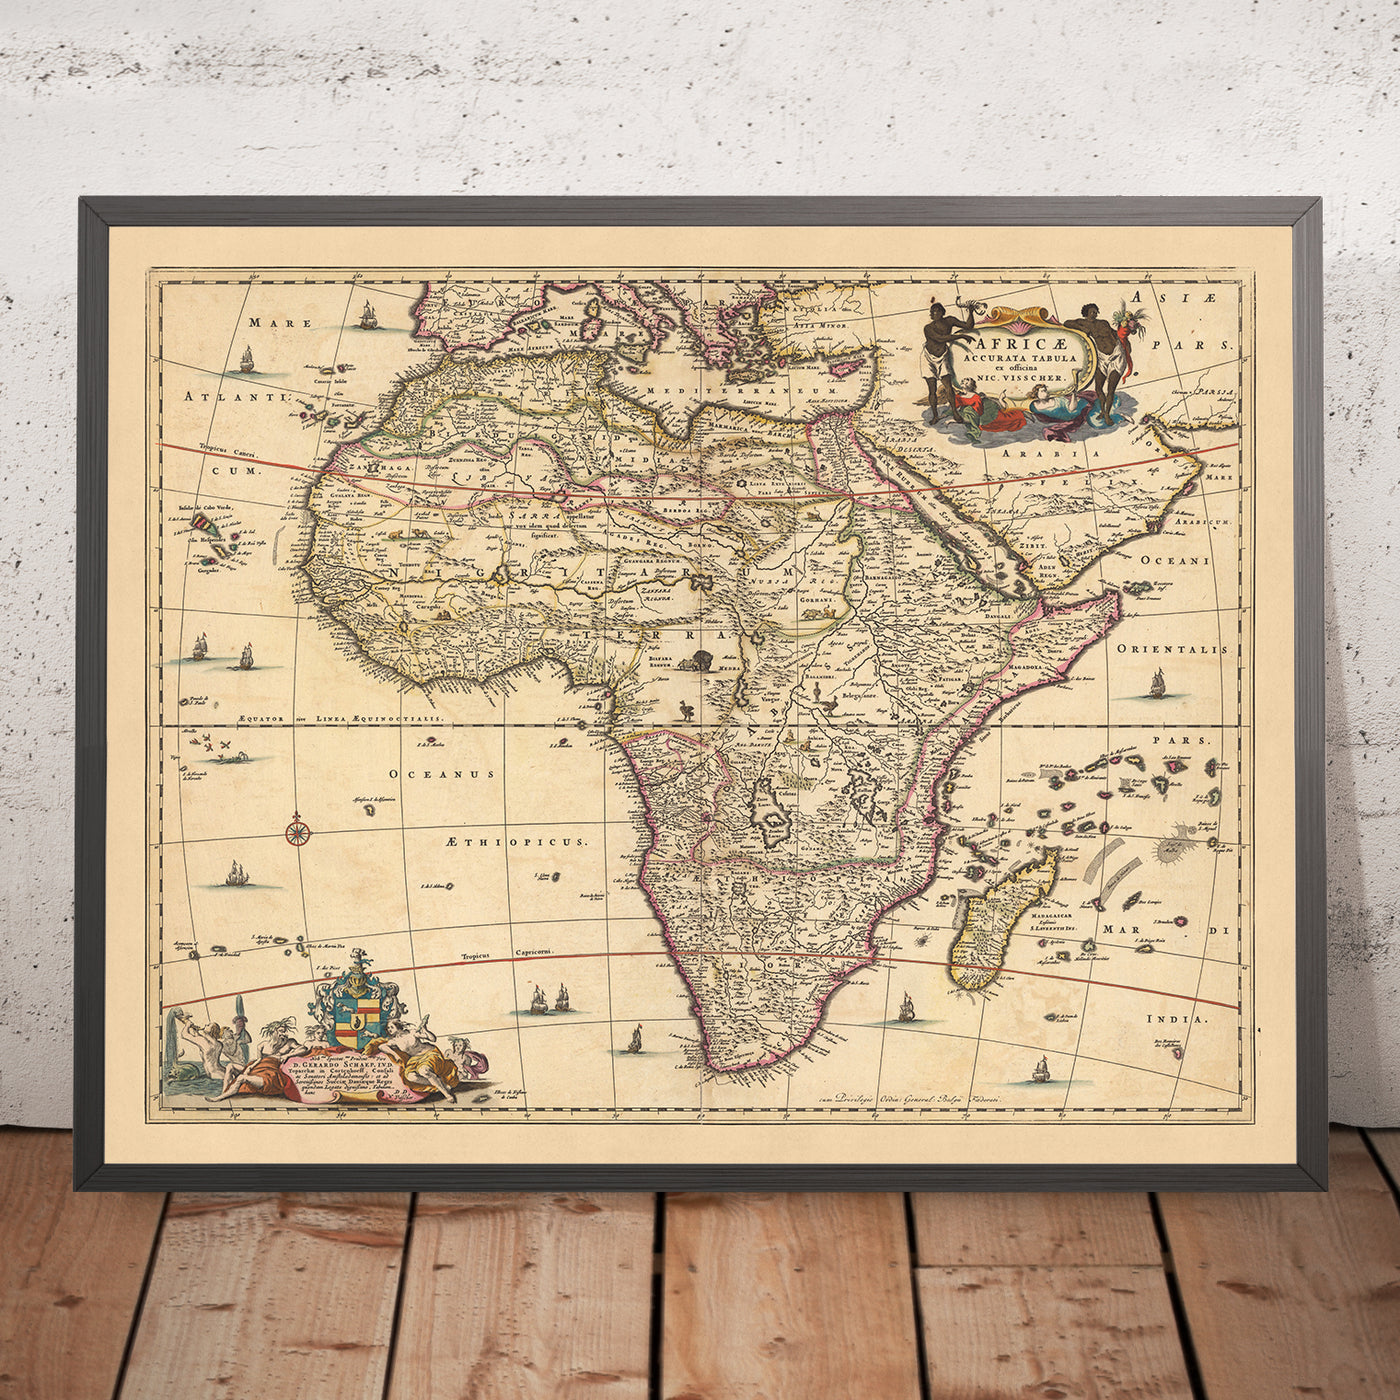 Antiguo mapa de África: 'Africae Accurata Tabula' de Visscher, 1690: El Cairo, Tombuctú, Mombasa, Luanda, Ciudad del Cabo